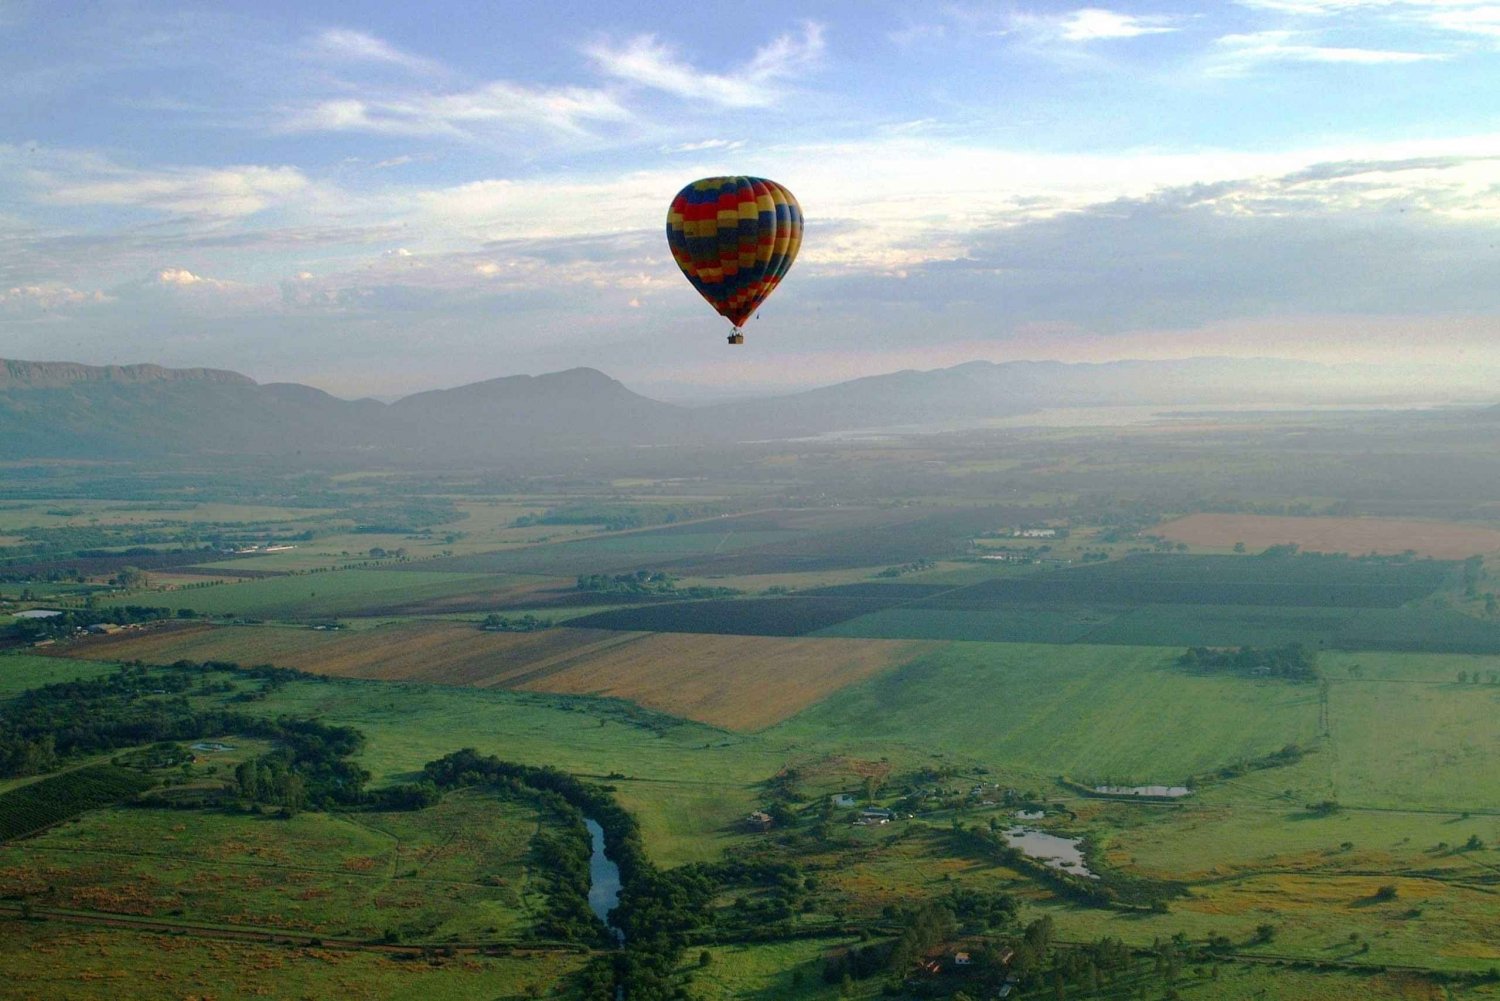 Johannesburg: Luchtballonvaart langs Magalies Valley